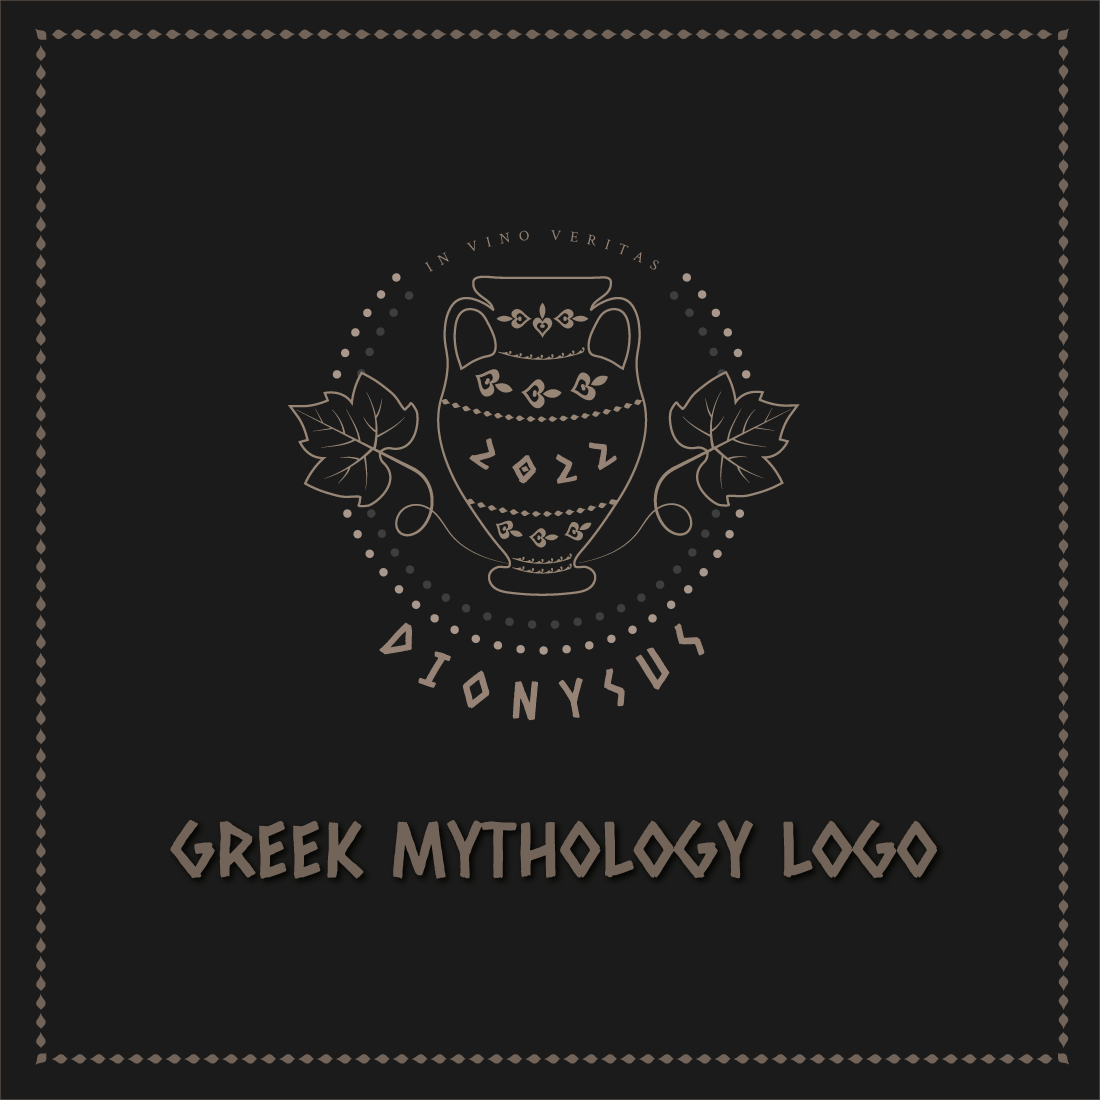 Dionysus Greek Mythology Logo cover image.